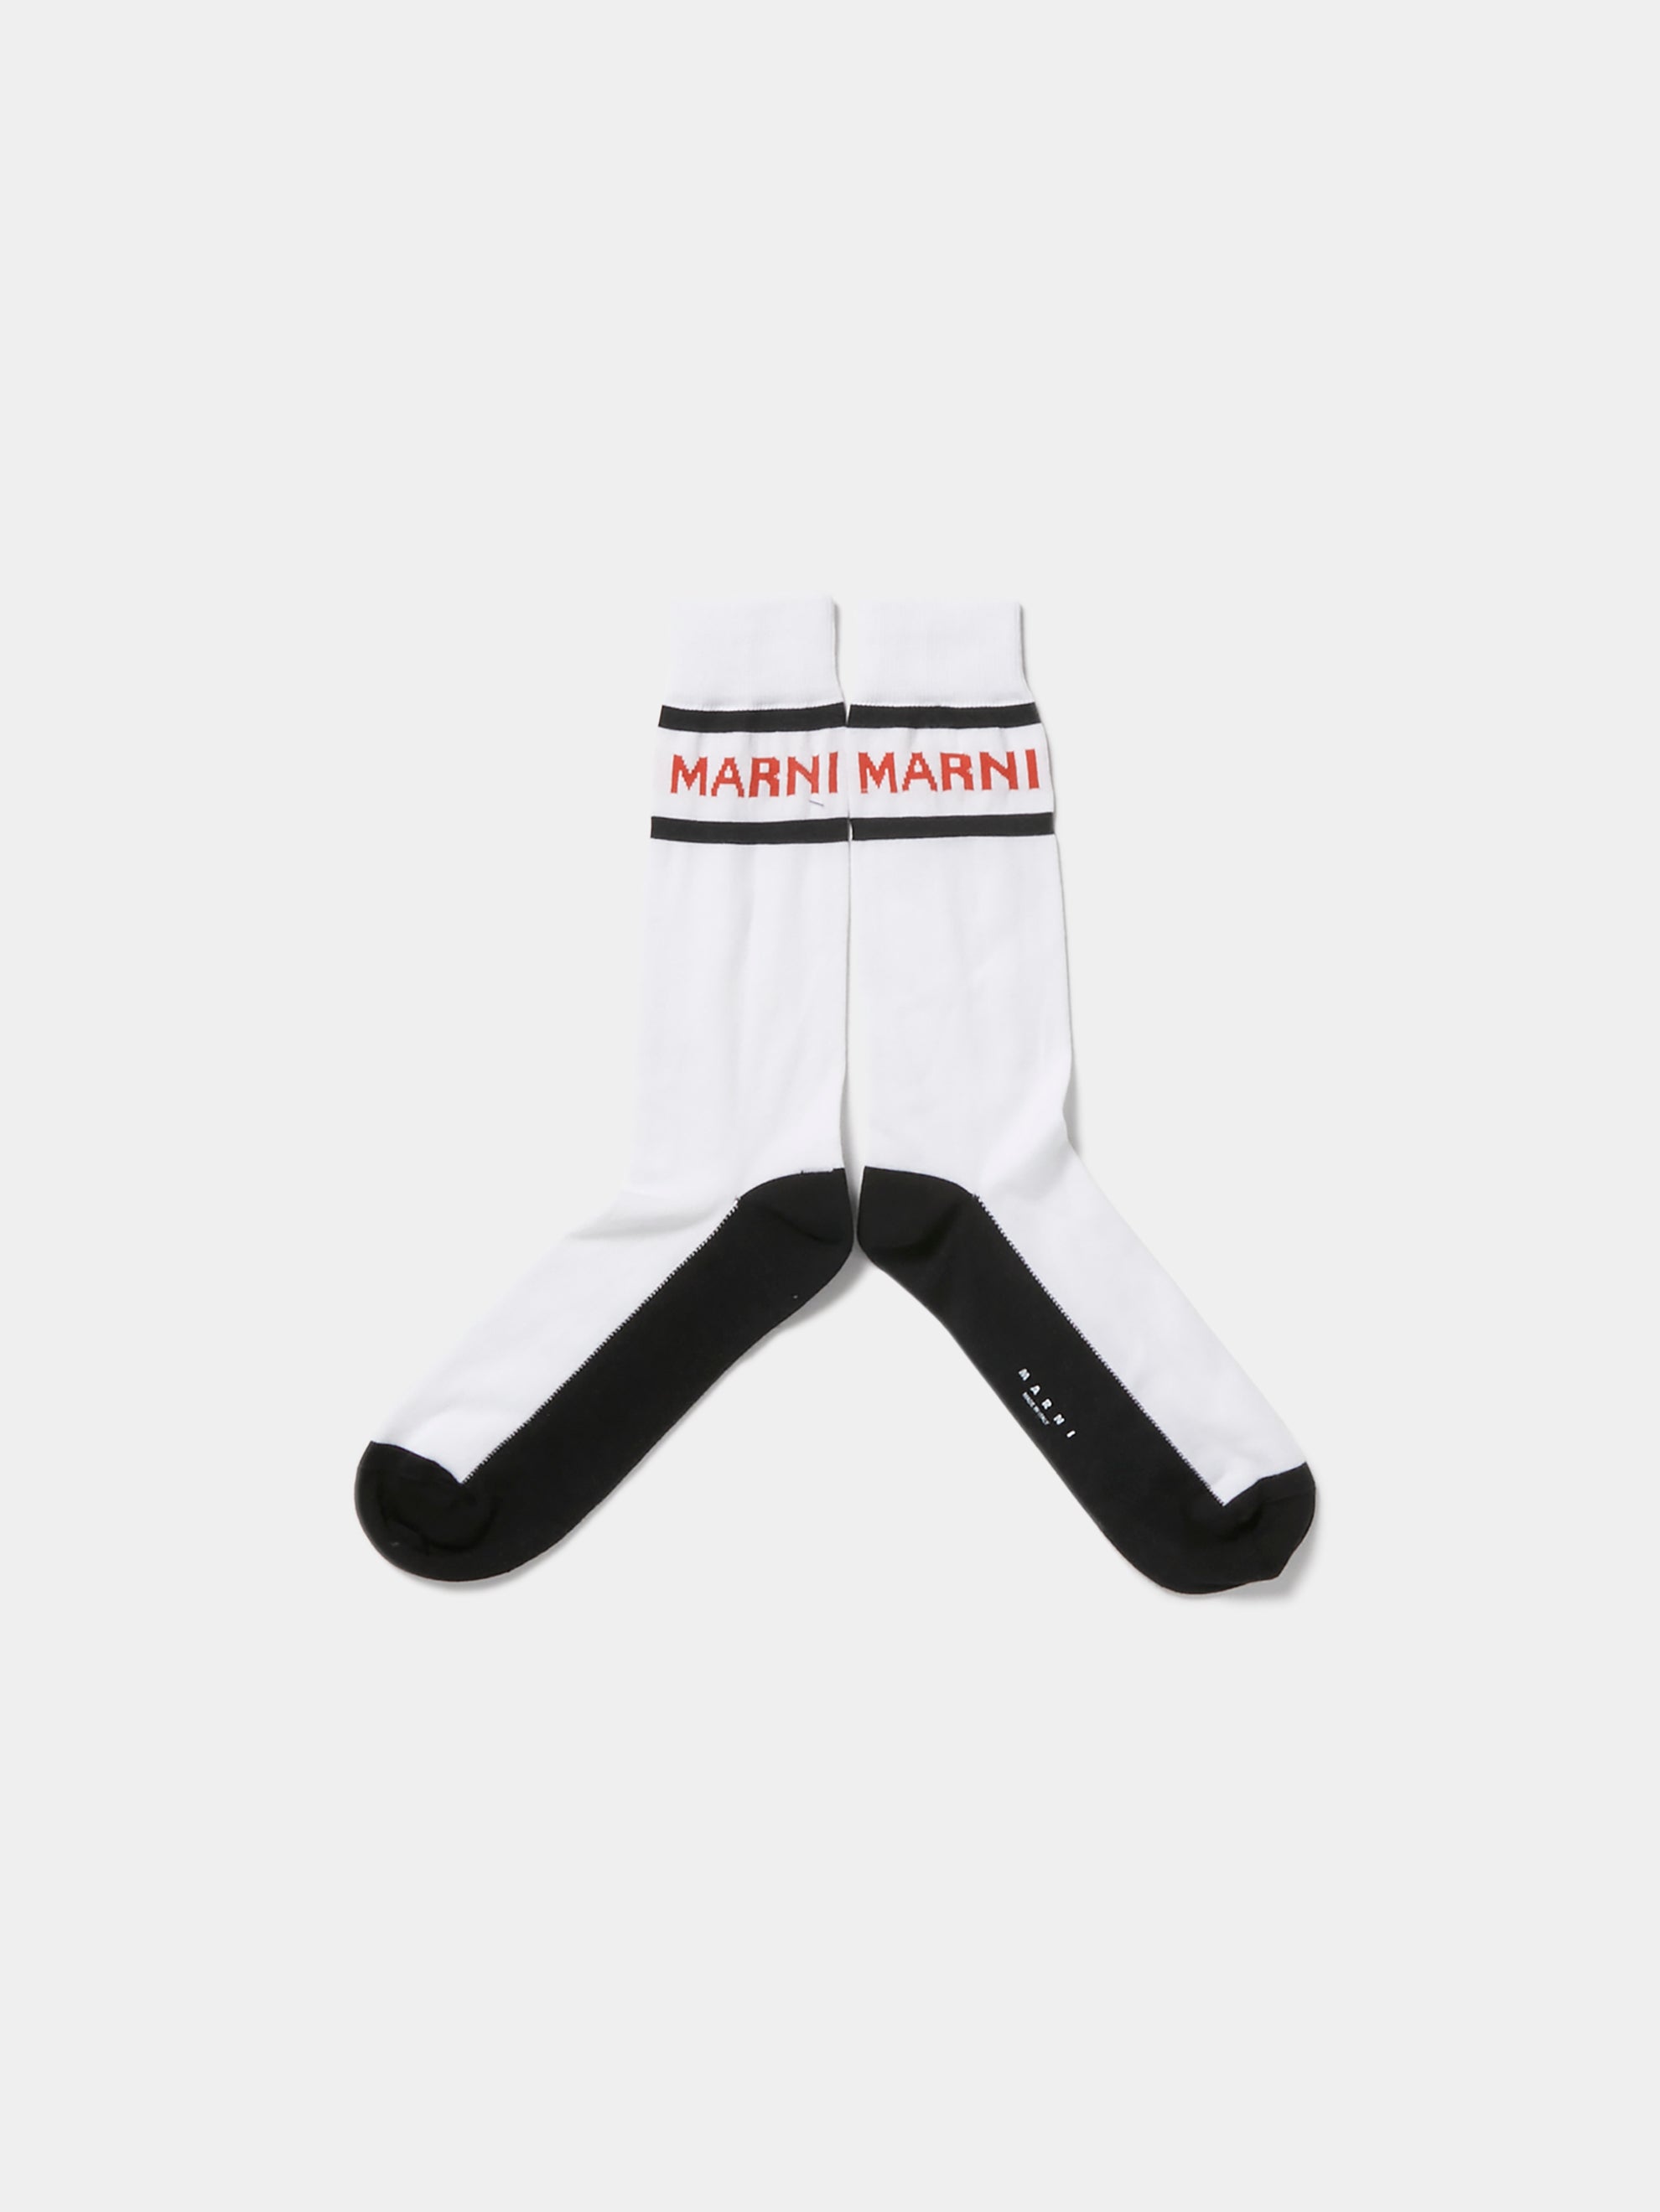 Marni Man's Geometric Patterns Socks